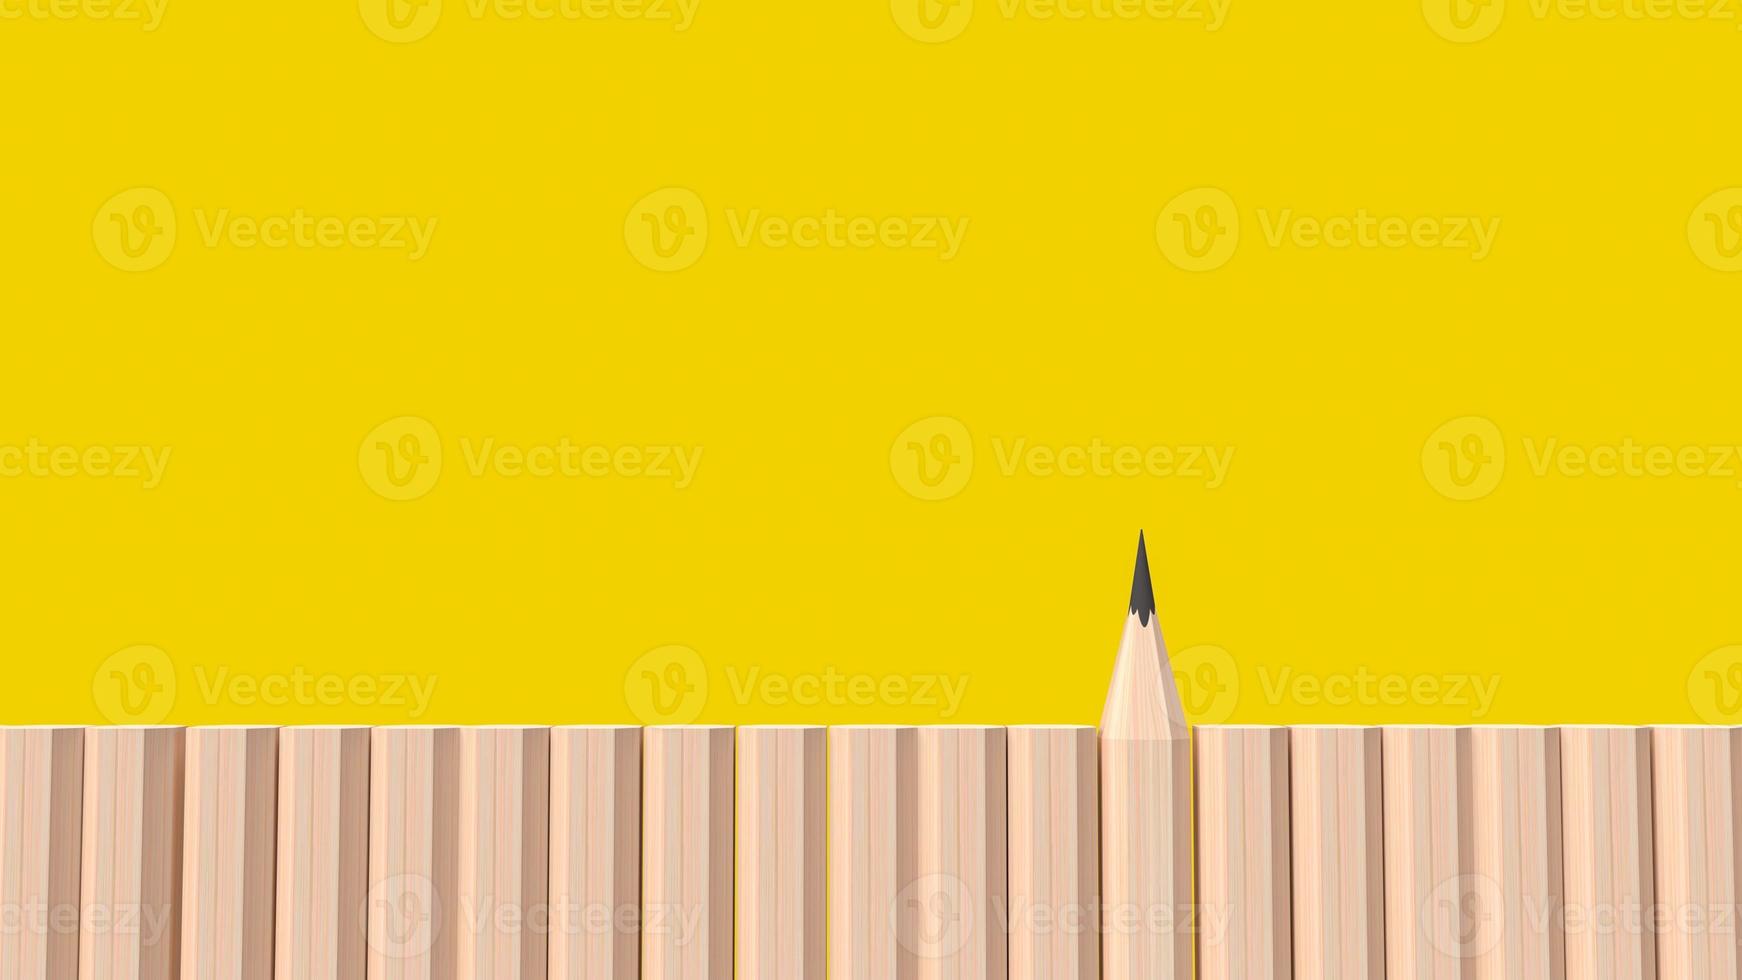 pennträet på gul bakgrund för utbildning eller affärsinnehåll 3d-rendering foto